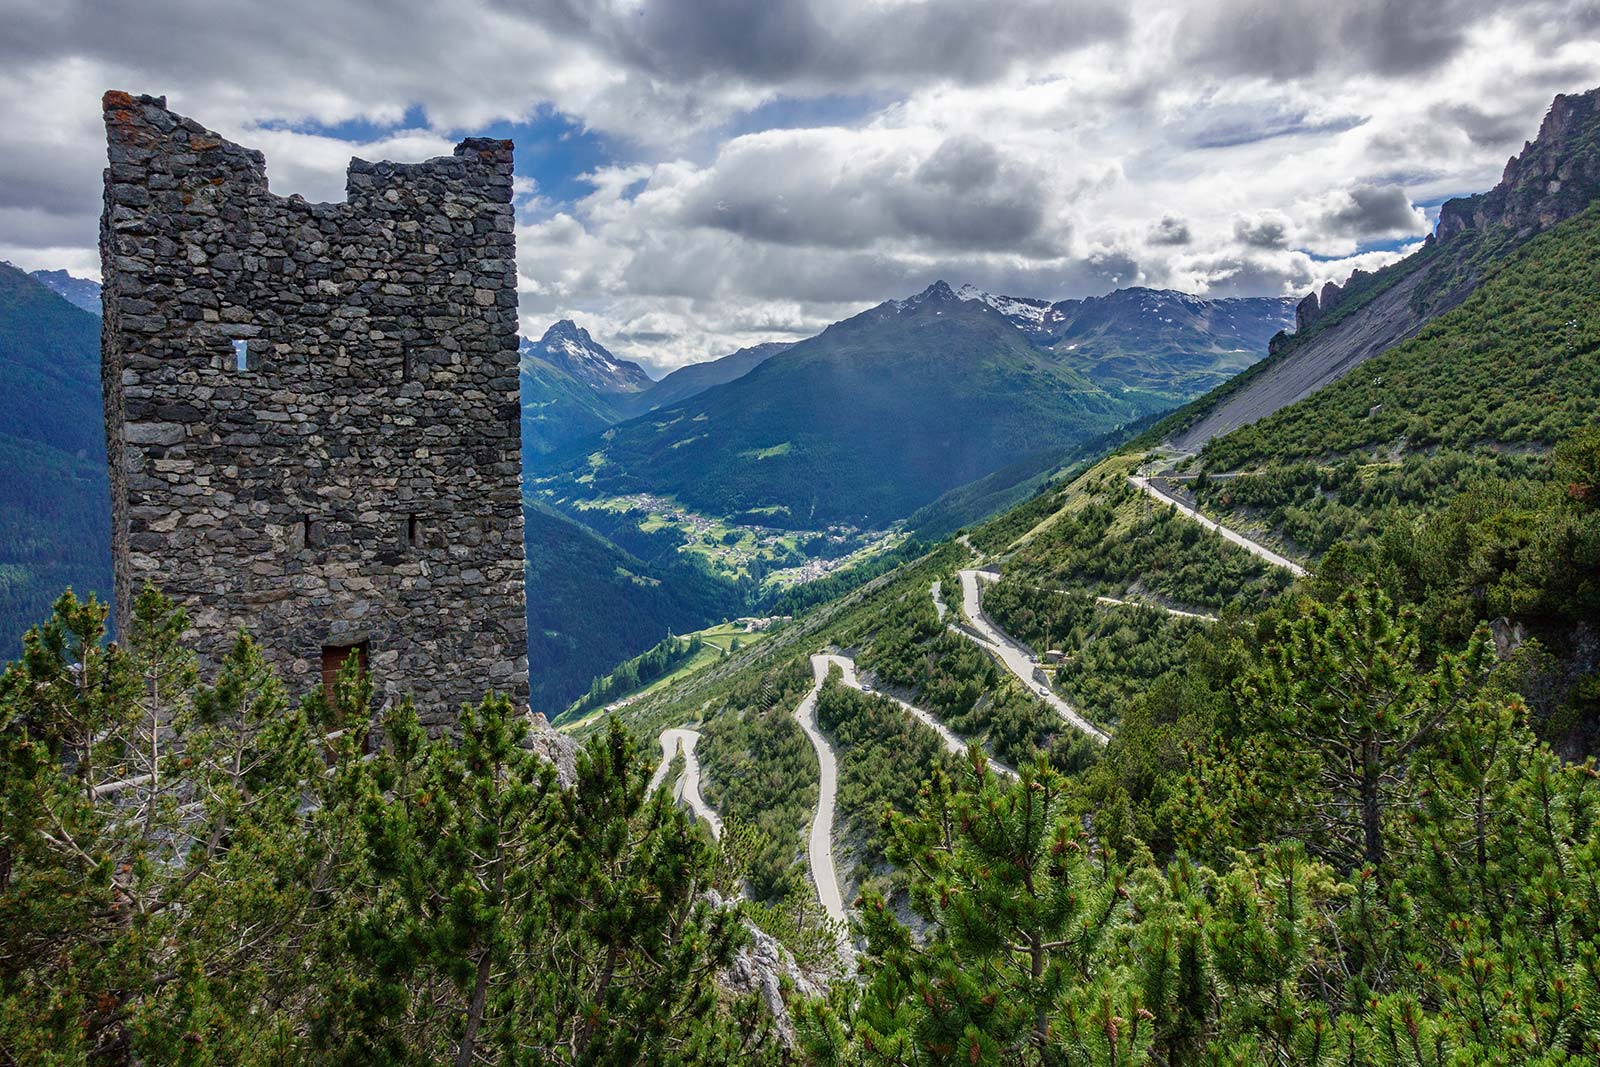 Passione Bici in Valtellina e dintorni di Bormio con percorsi